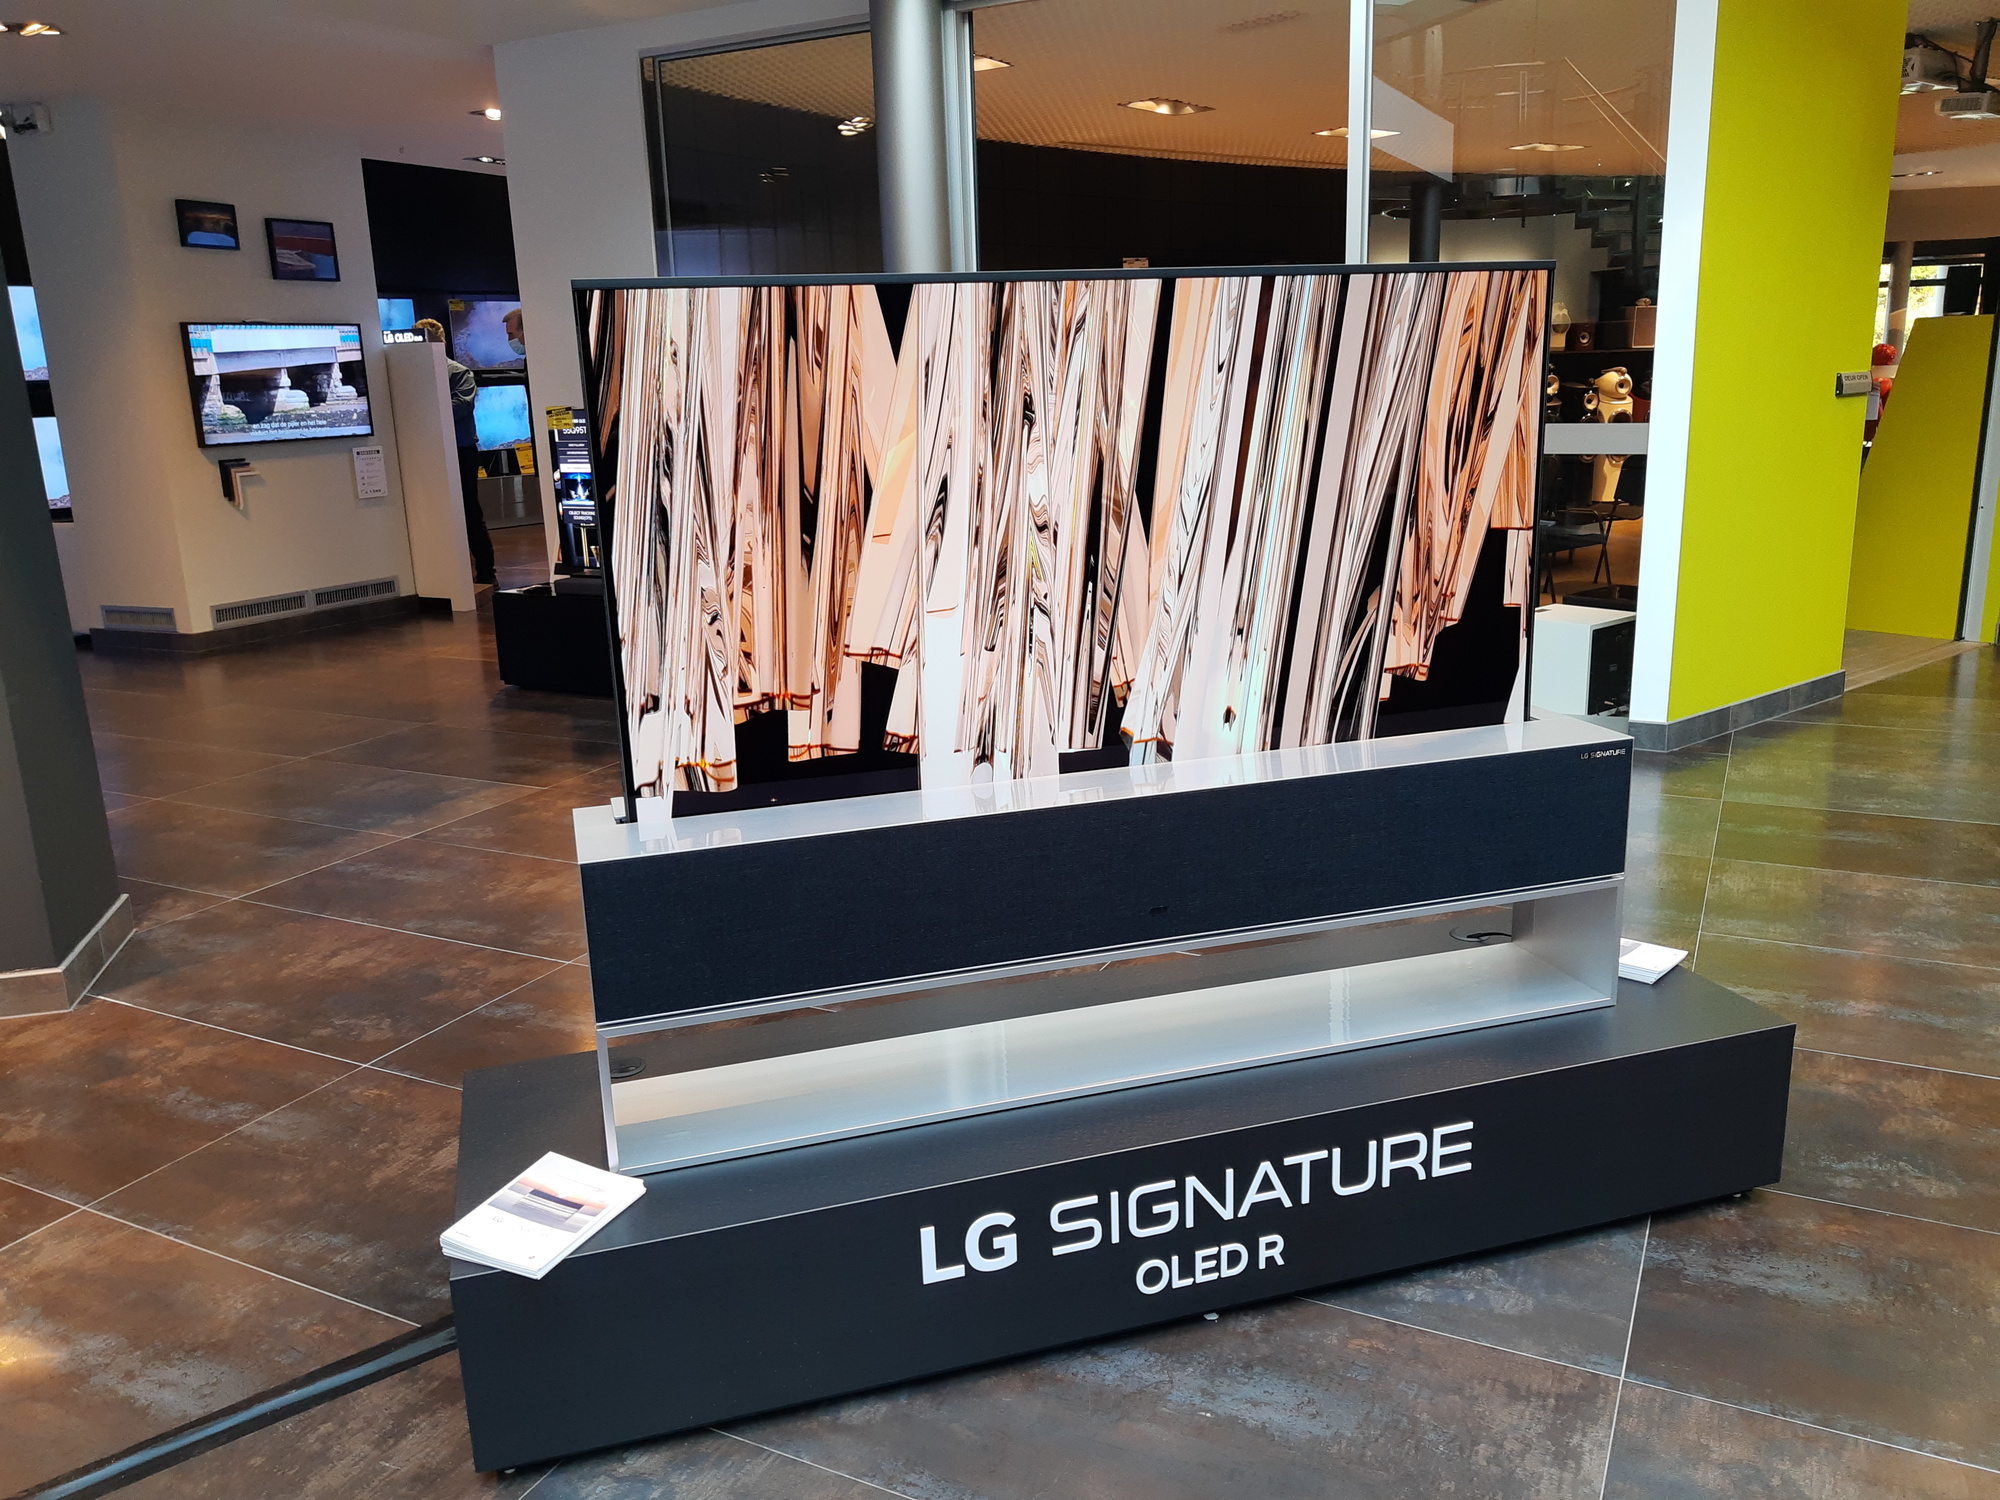 LG Signature OLED R, PVL